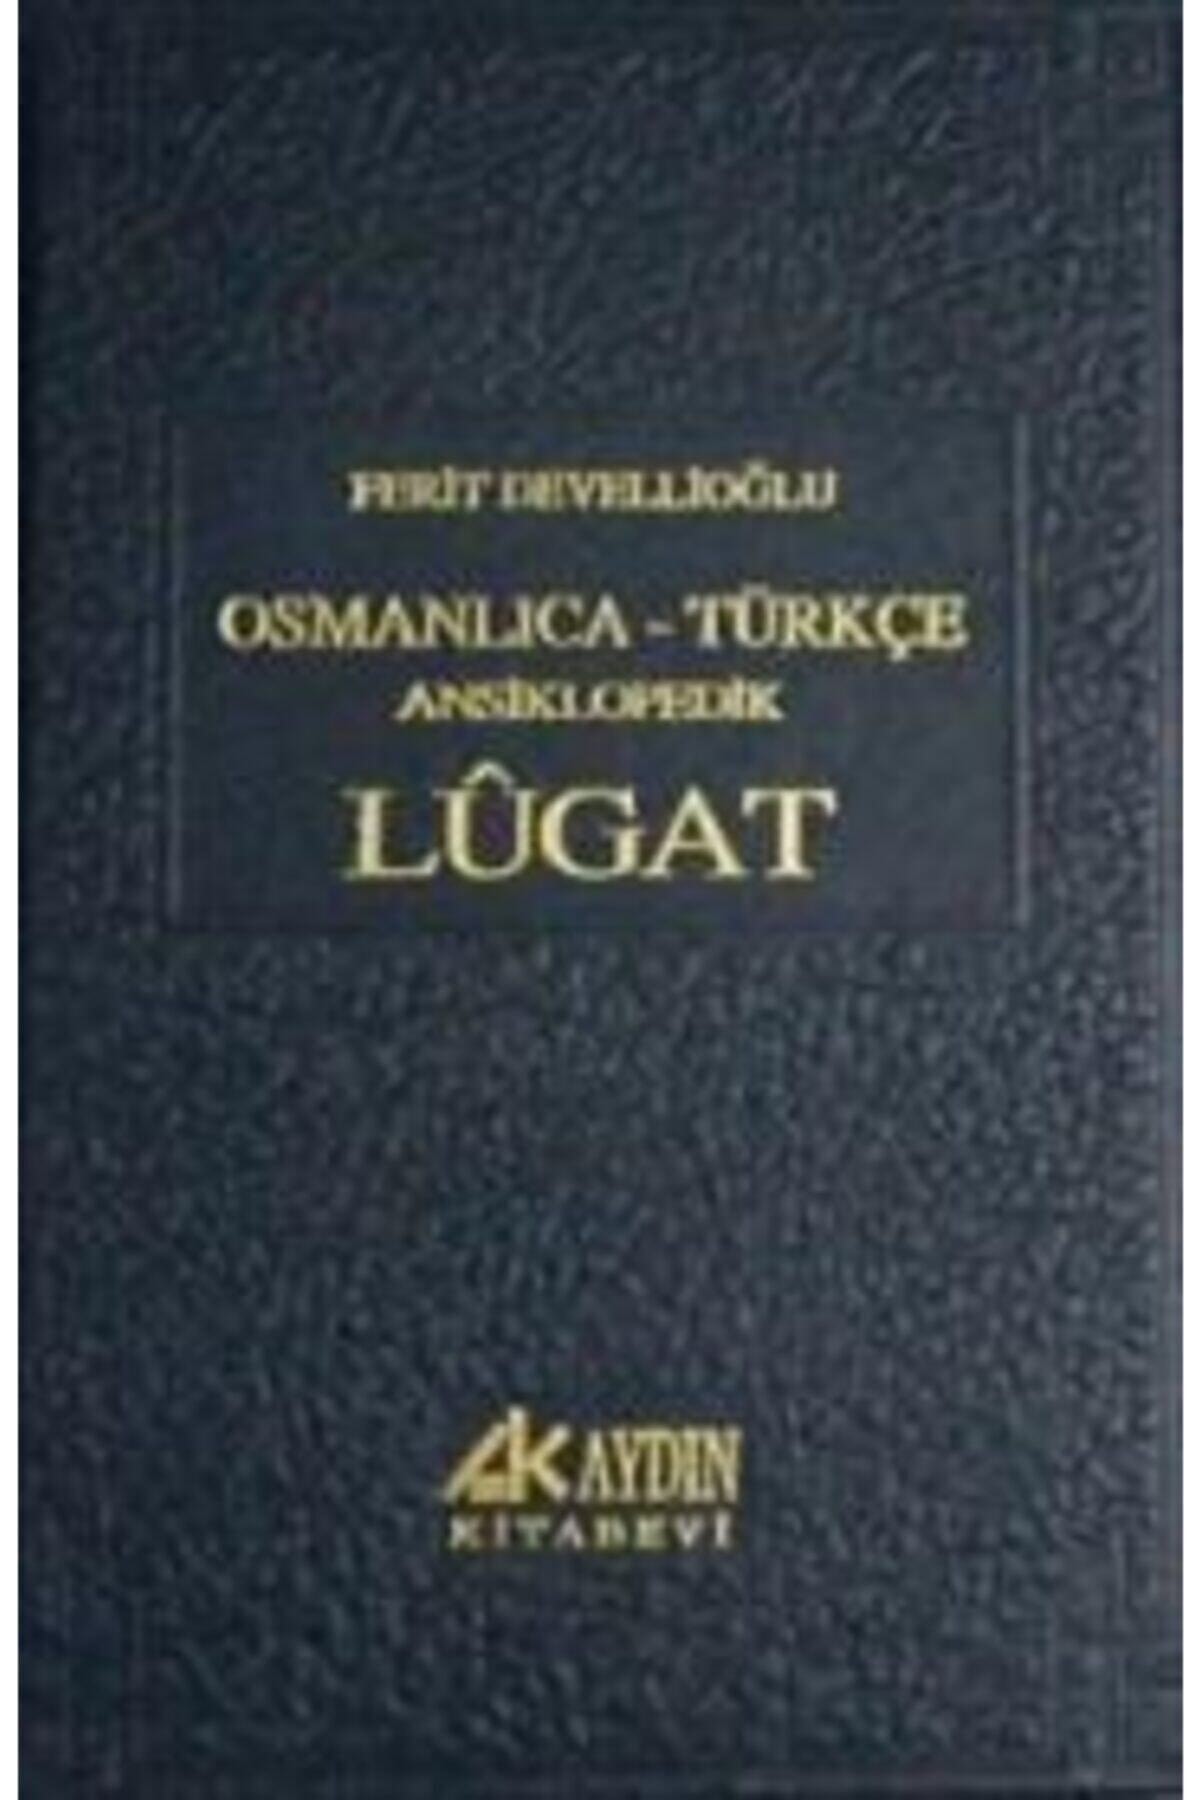 Aydın Kitabevi Osmanlıca- Türkçe Ansiklopedik Lugat -Ferit Devellioğlu